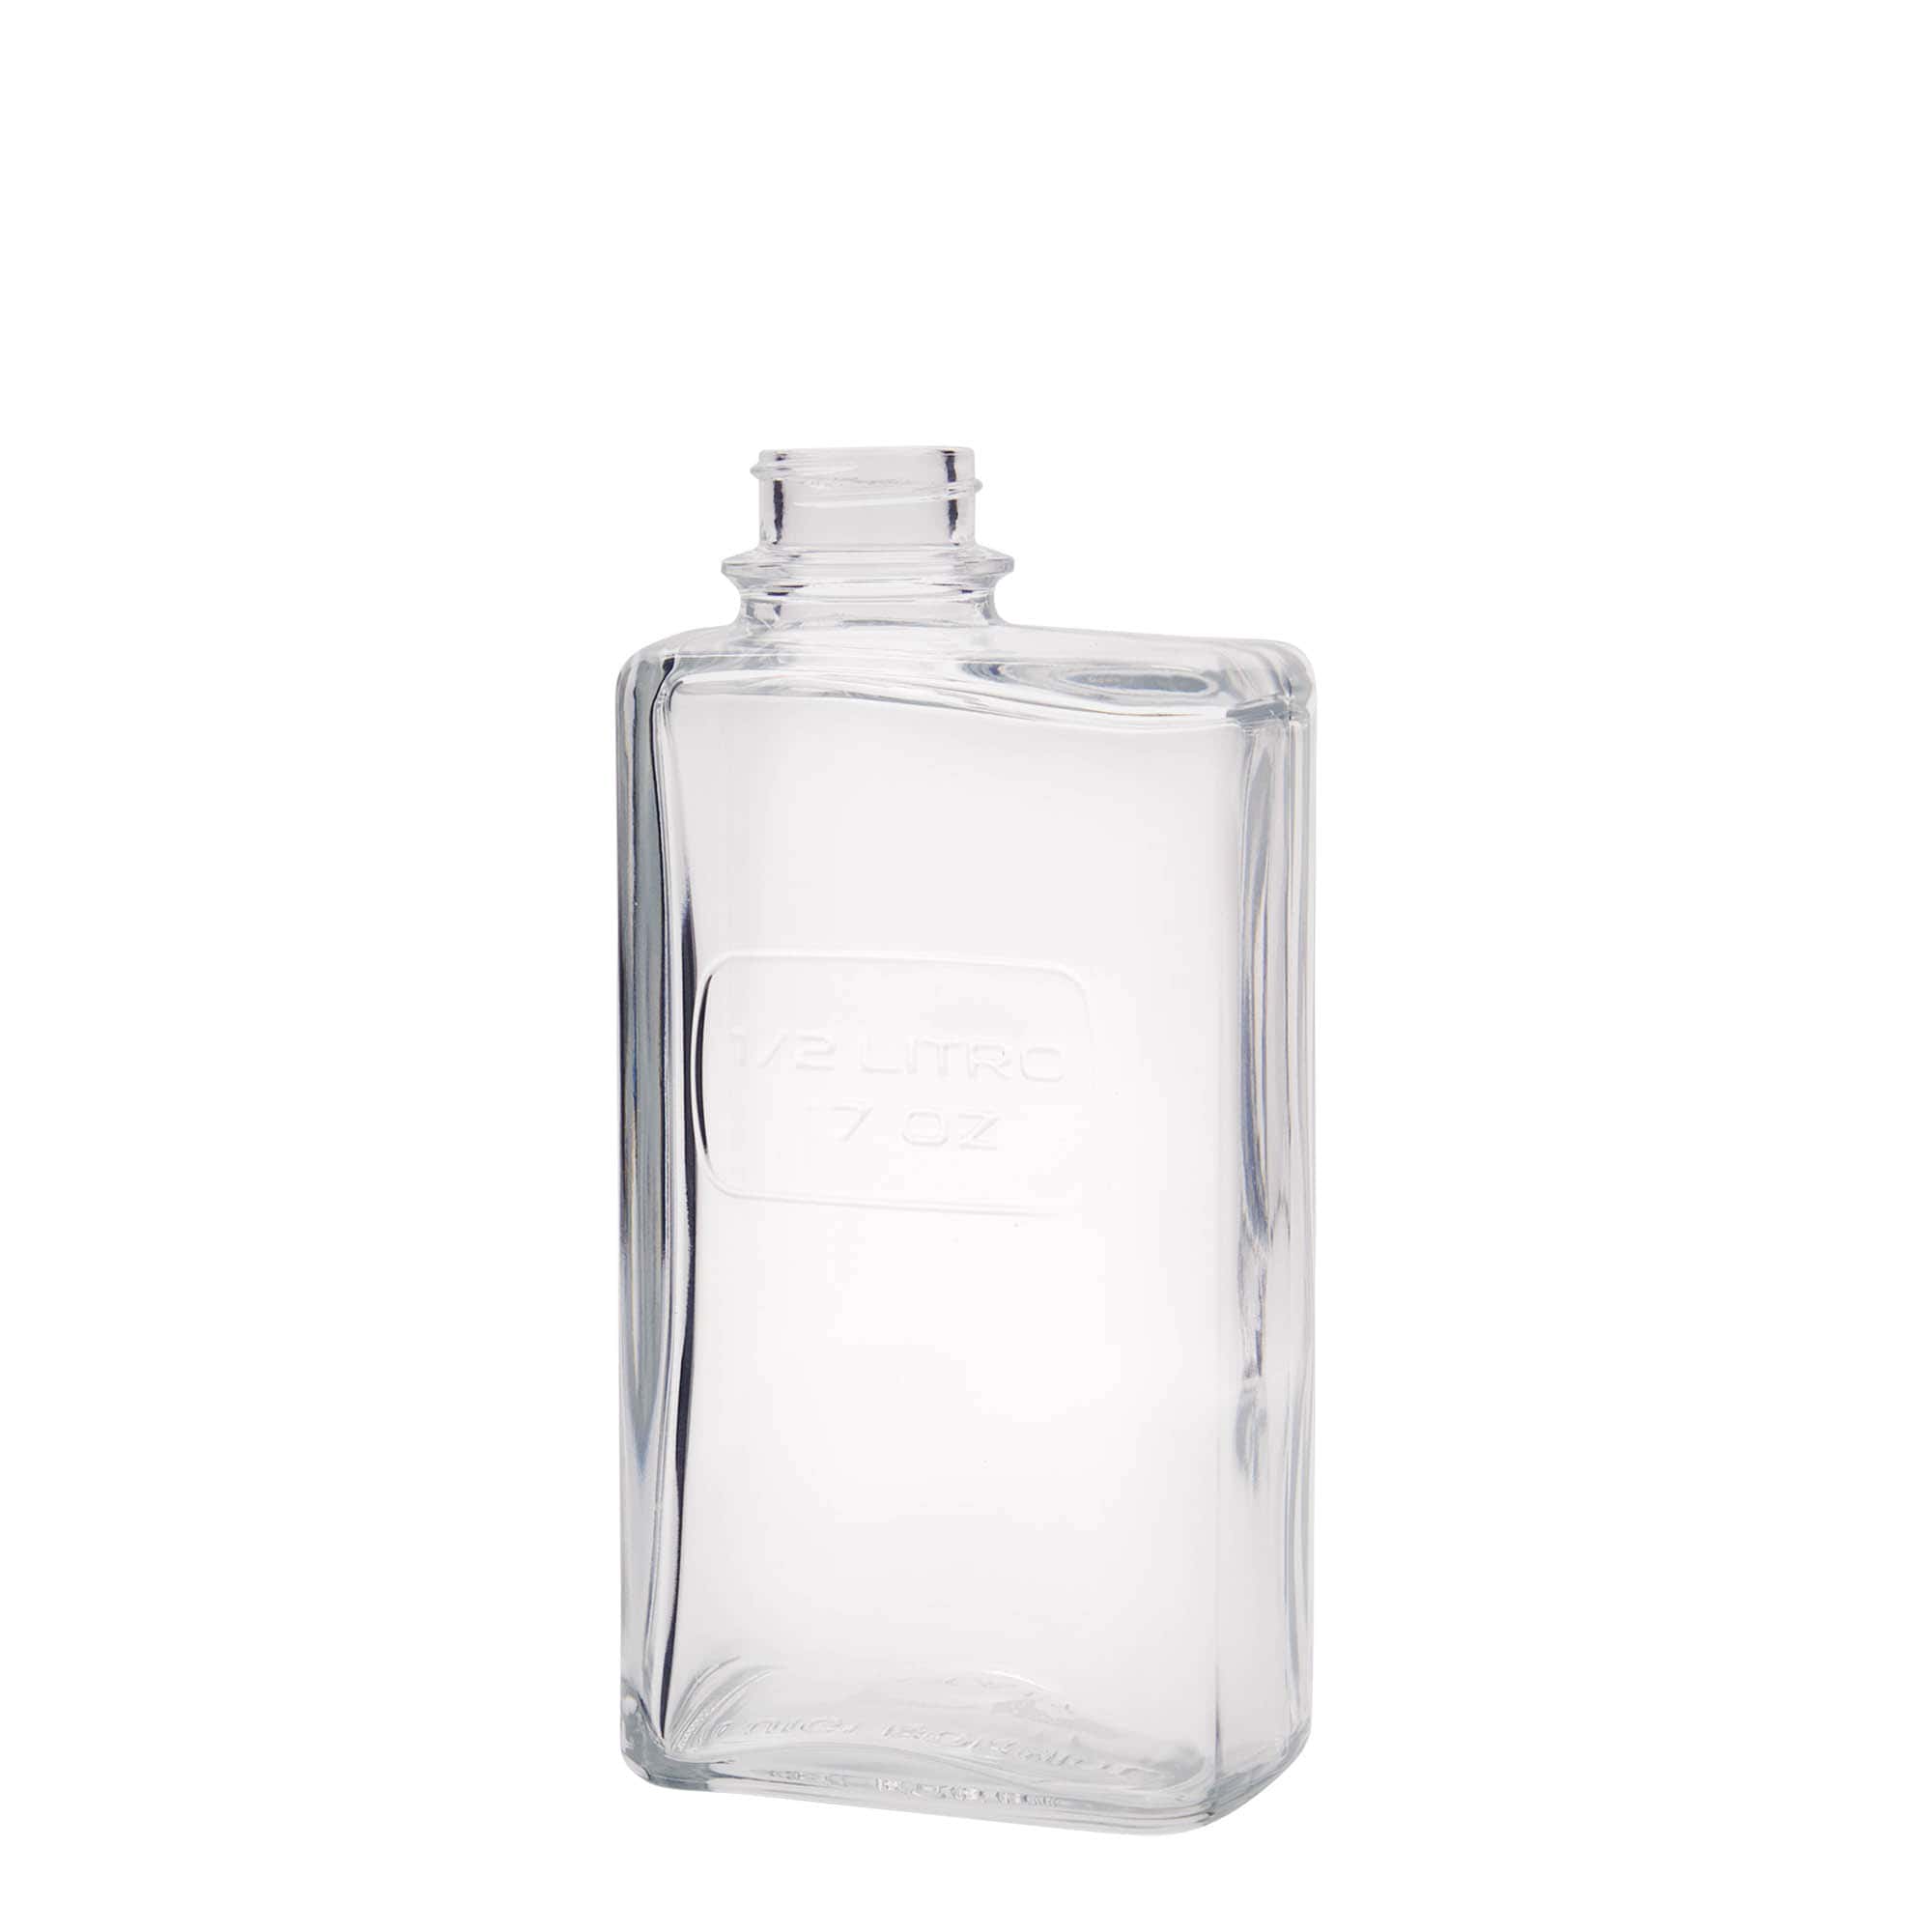 500 ml glass bottle 'Optima Lattina', rectangular, closure: screw cap